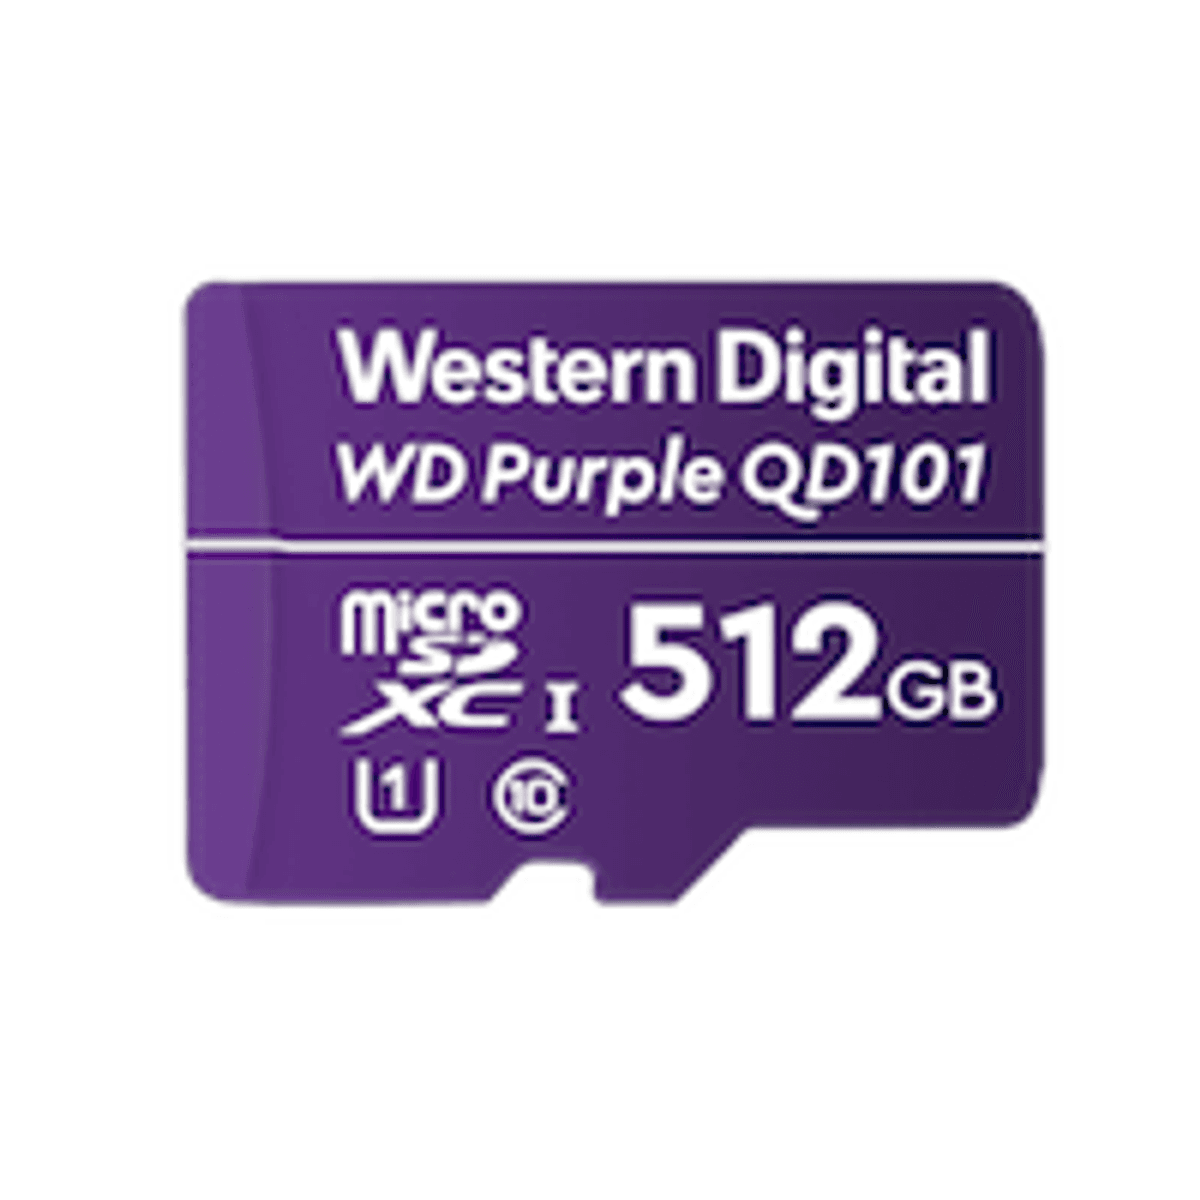 Western Digital brengt WD Purple Ultra Endurance microSD-kaart op de markt image